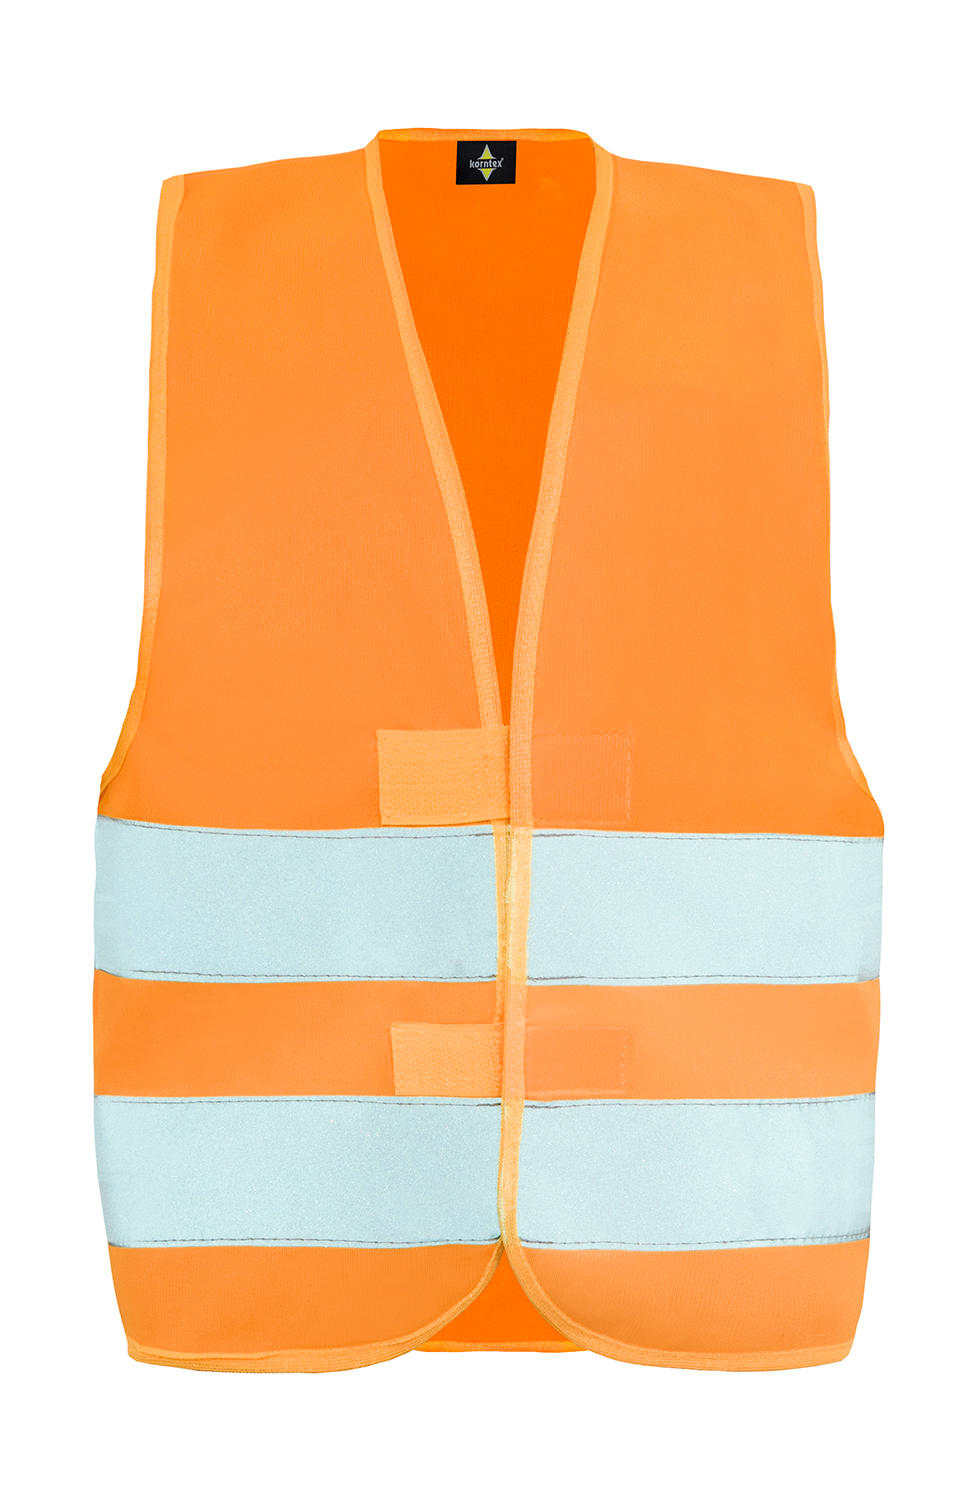 Safety Vest for Kids "Aarhus"